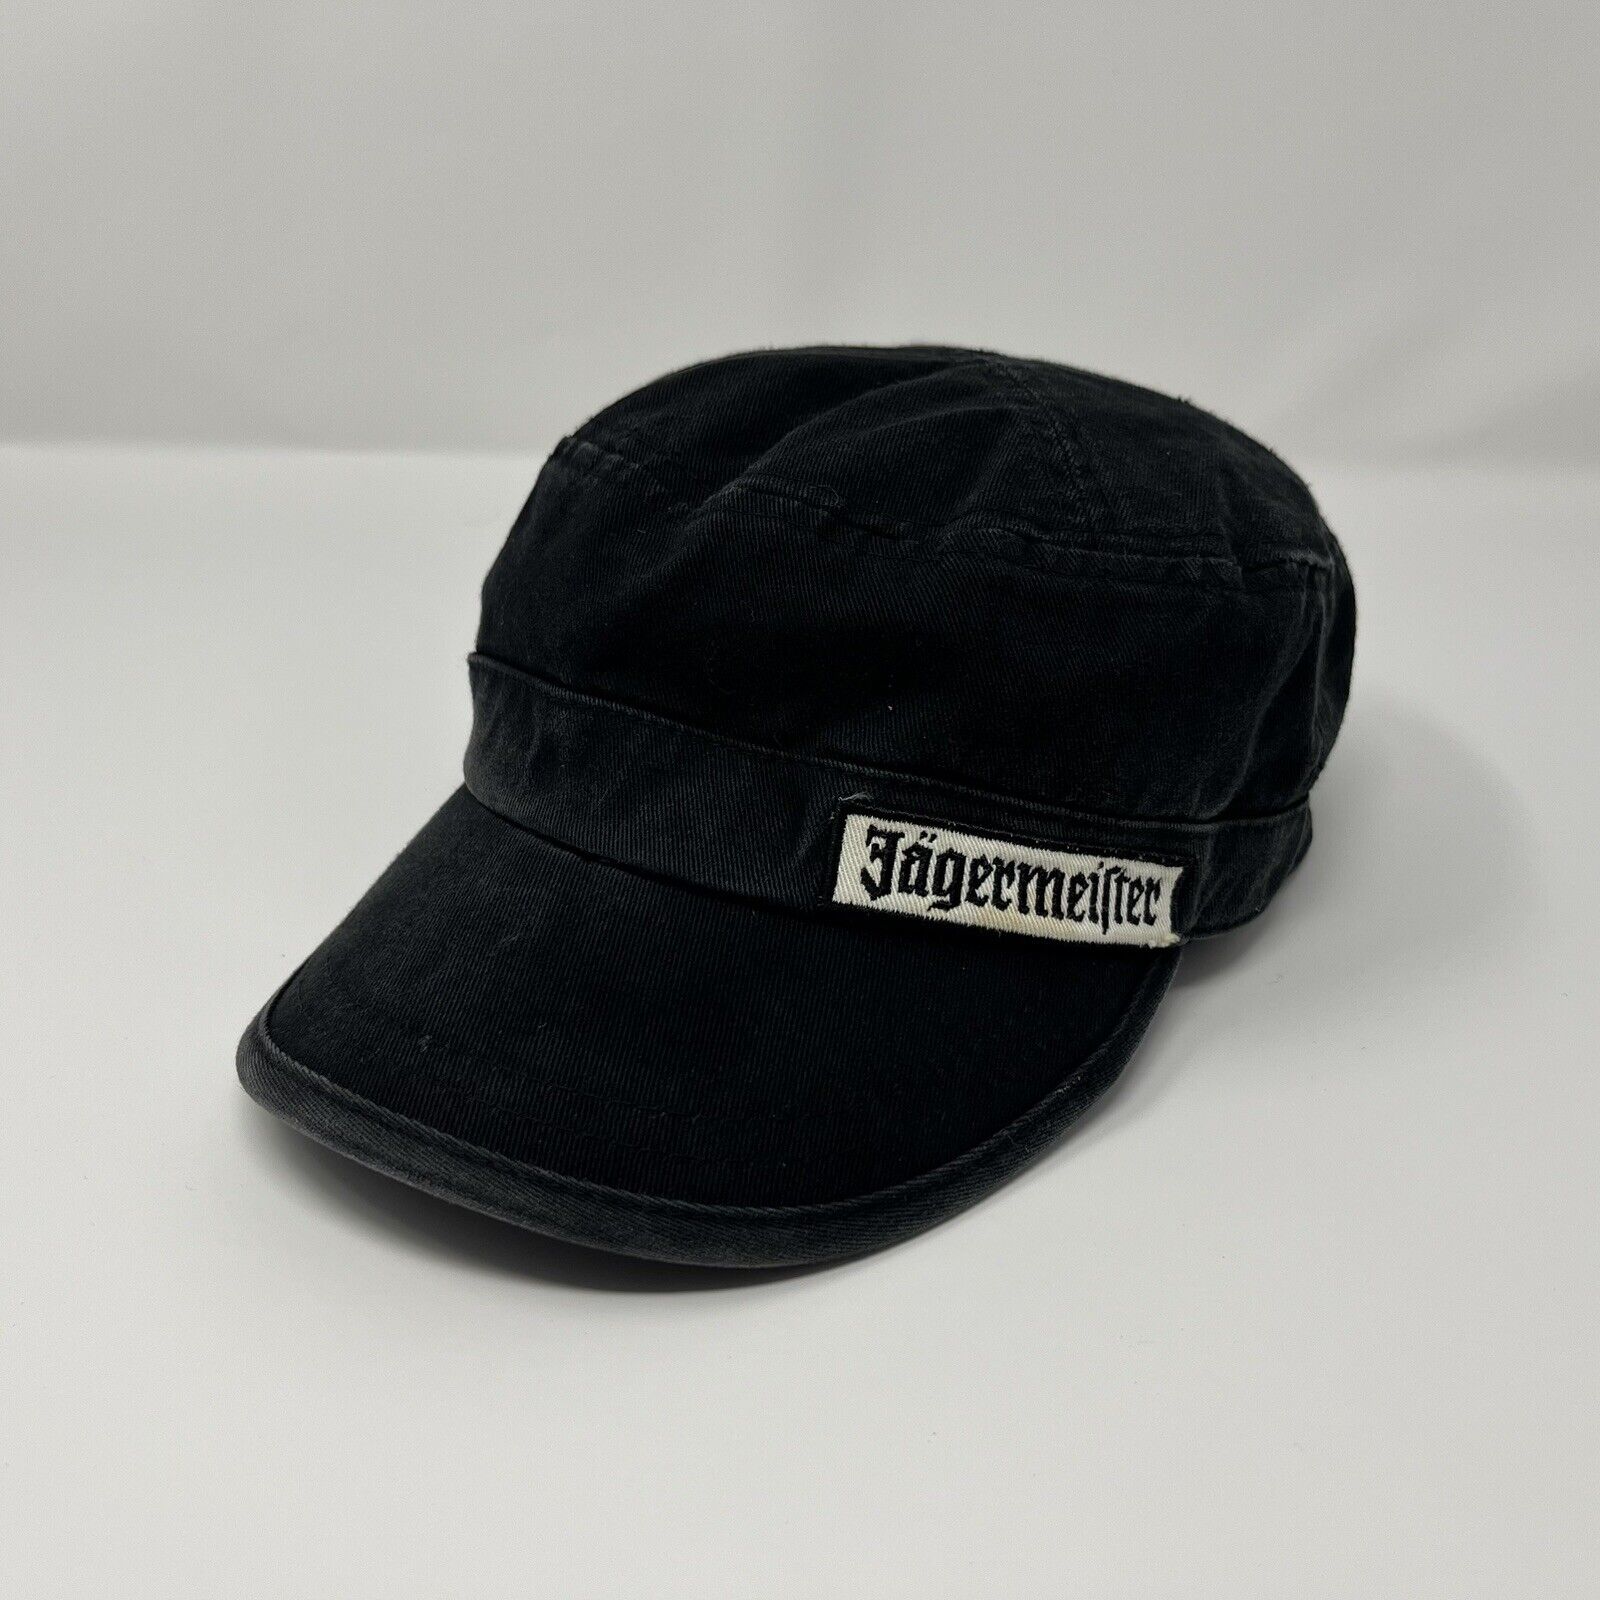 Vintage Jagermeister Cadet Hat Patch Bar Logo Adjustable Strap Embroidered Cap